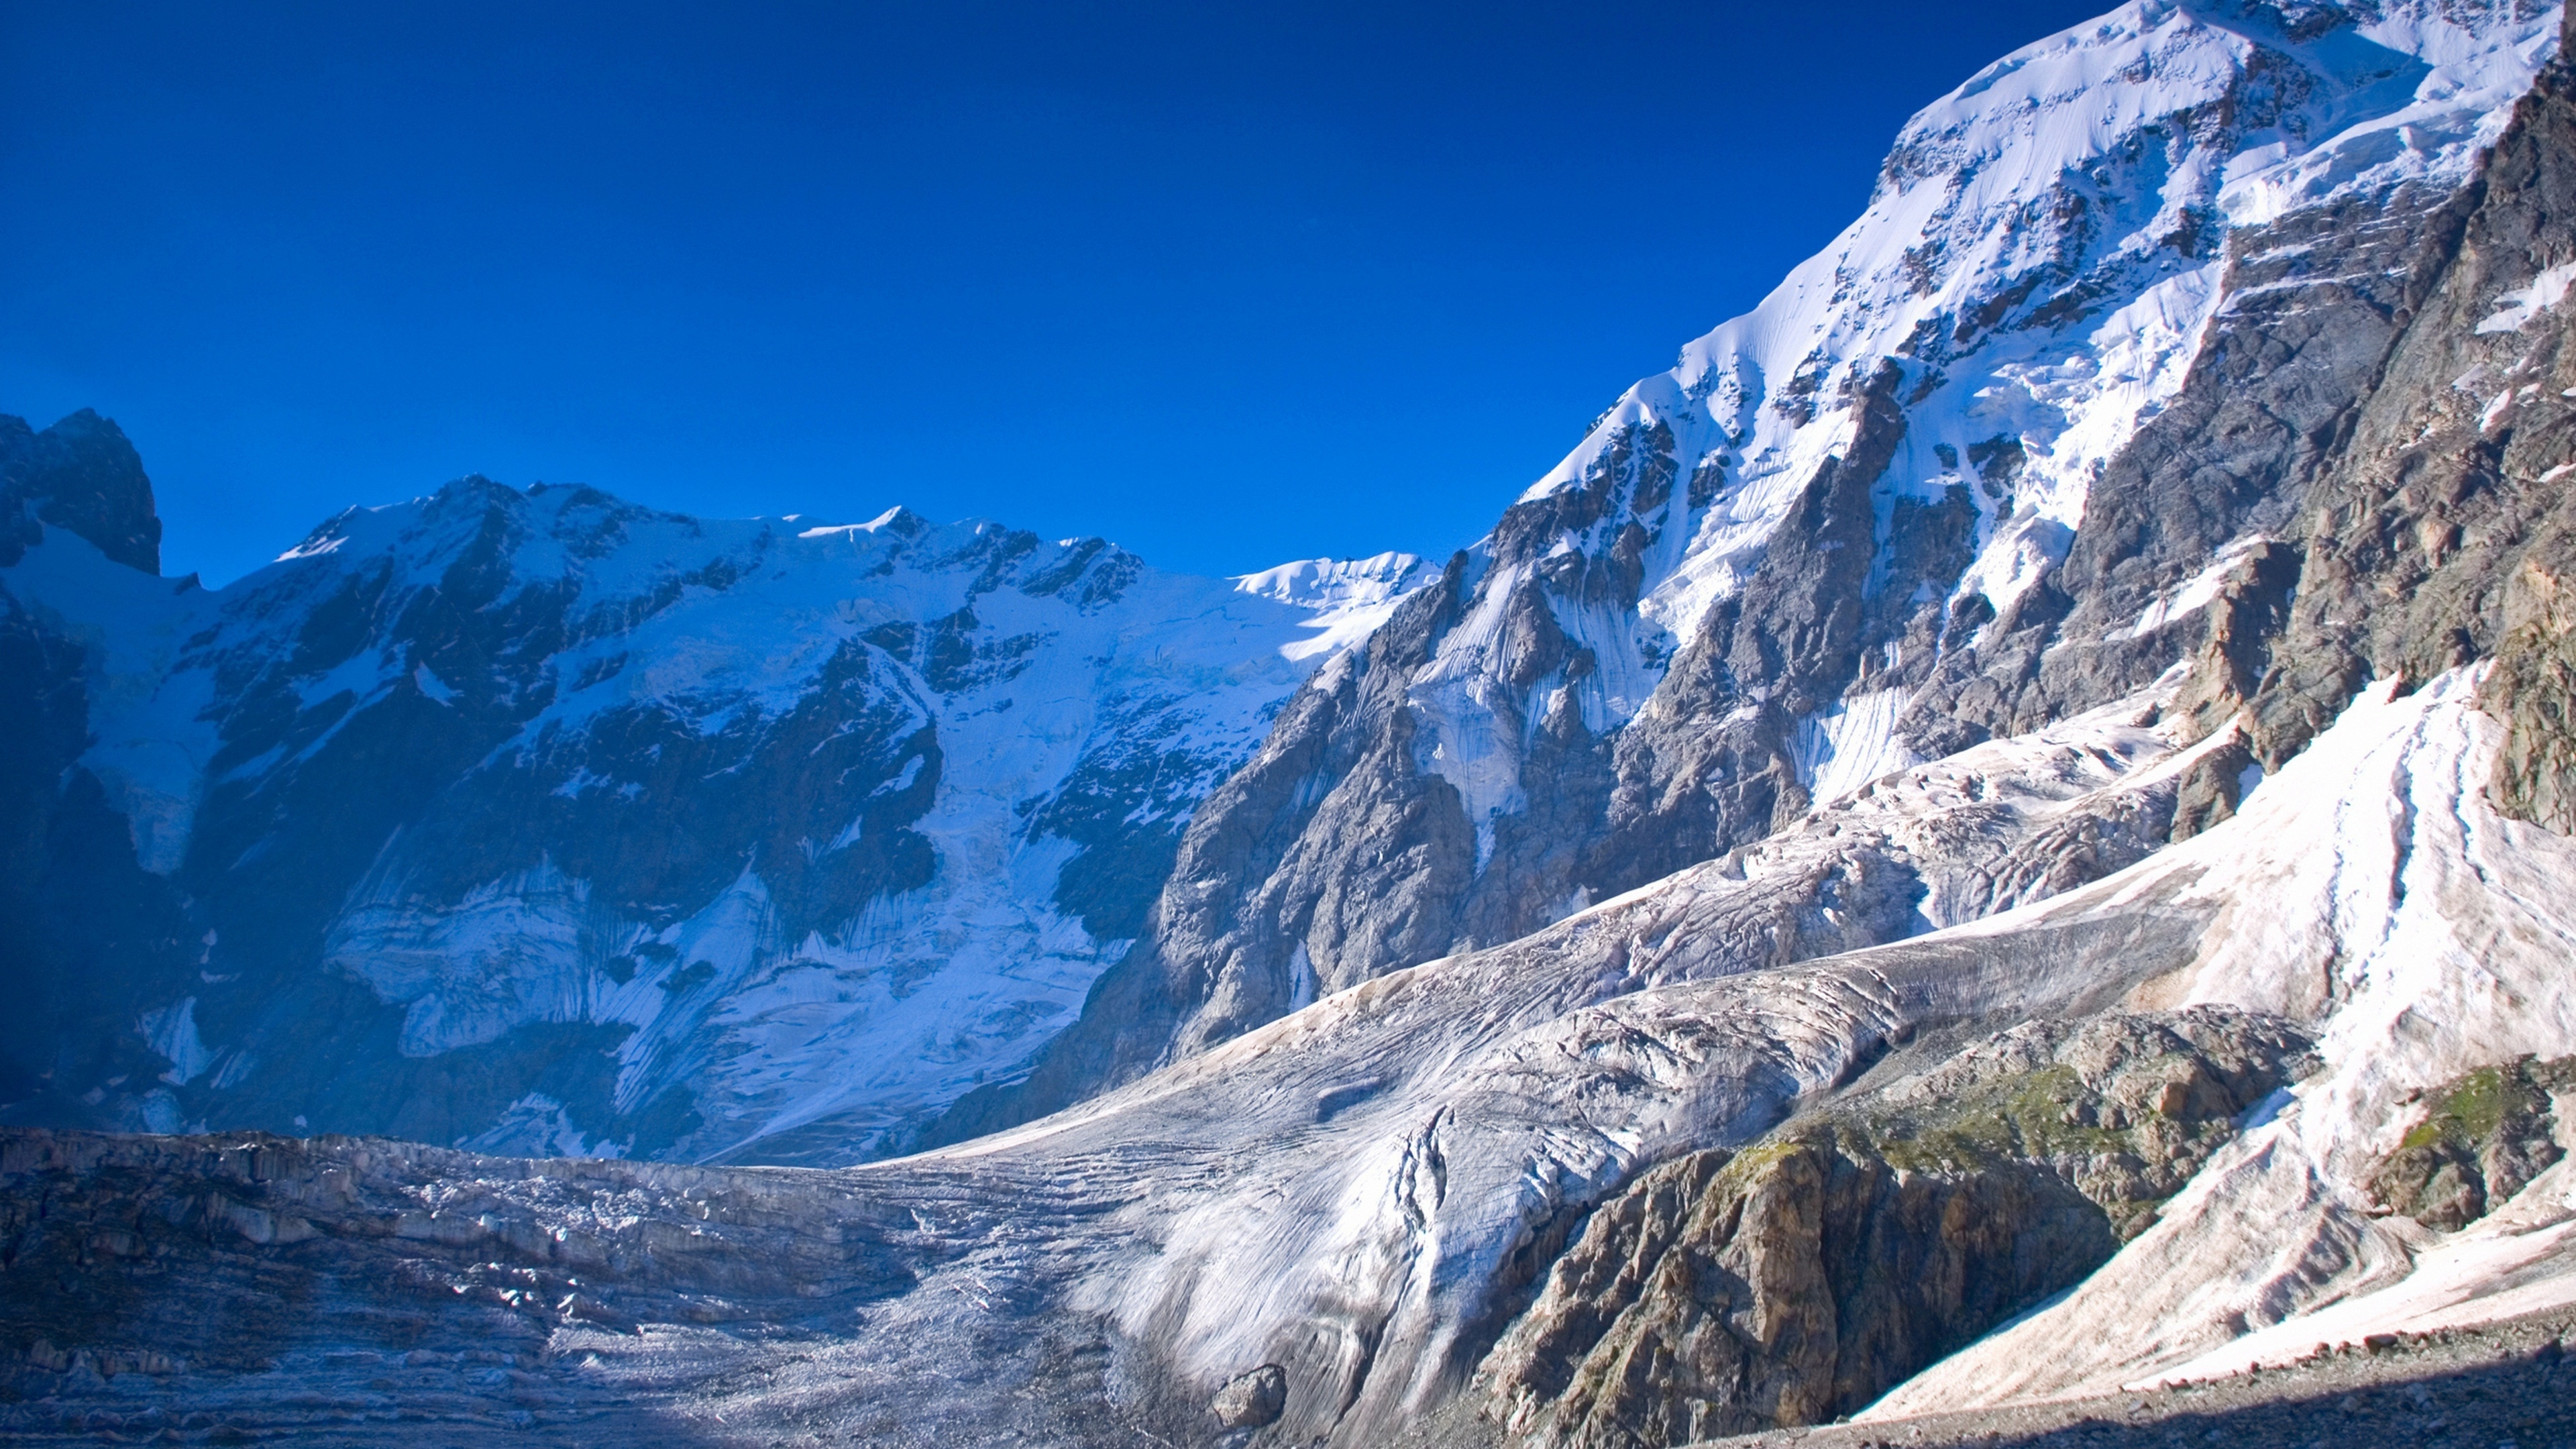 تصویر خوشگل طبیعت با طرح کوهستان سرد و خشک زمستانی